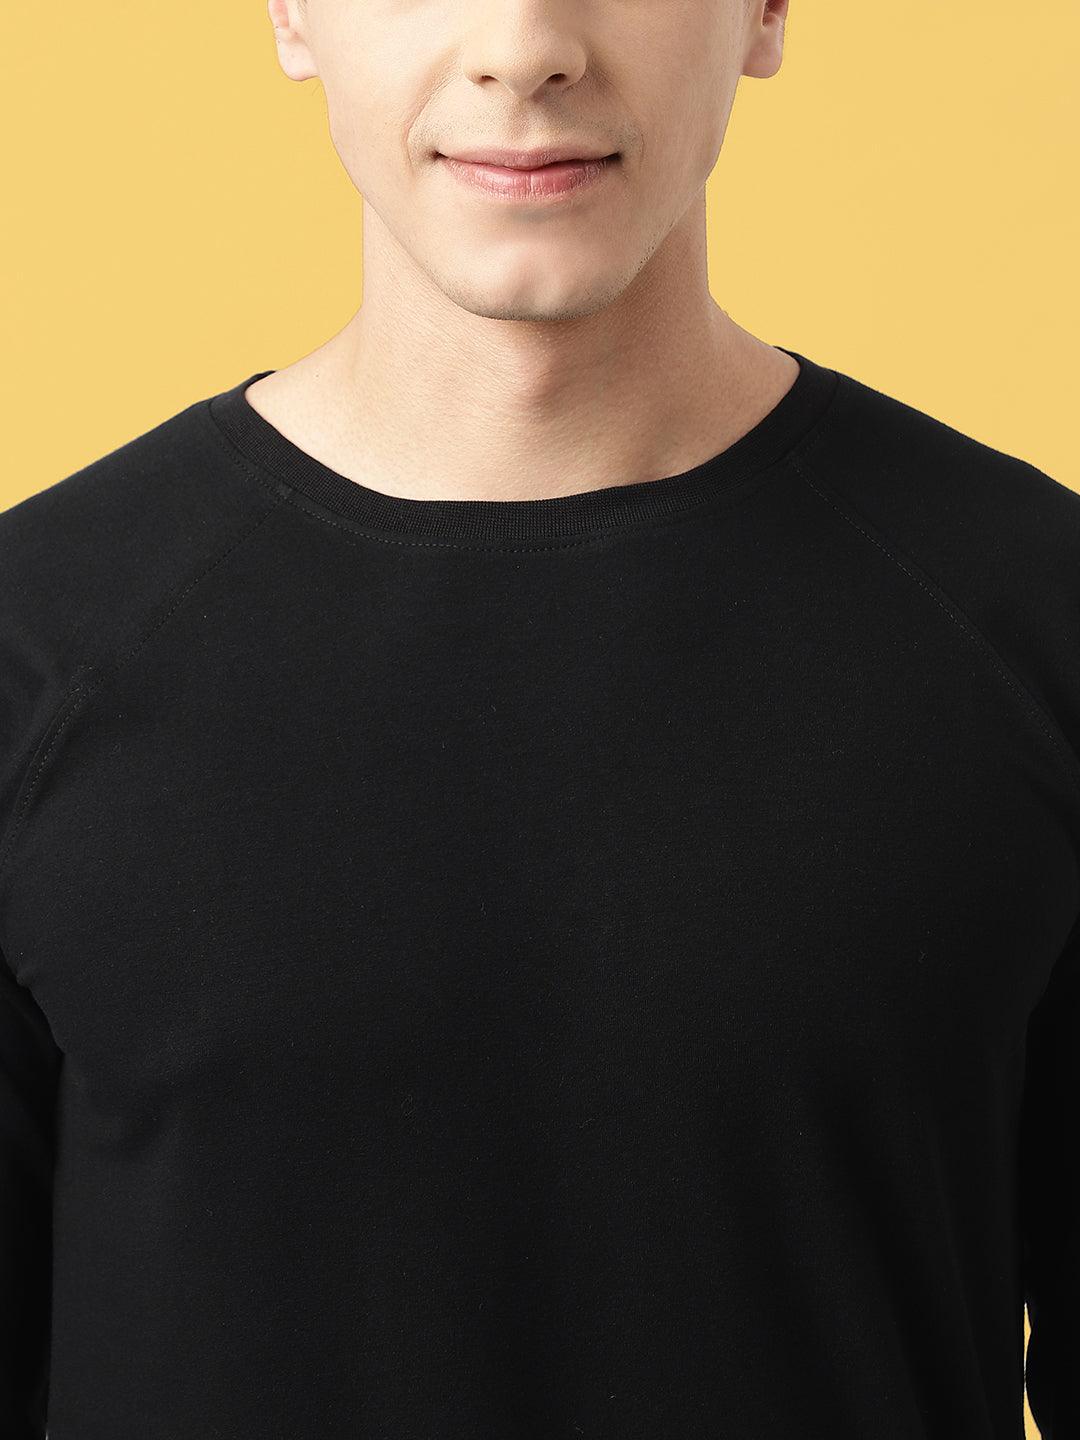 Men's Long Sleeve Underscrub Shirt